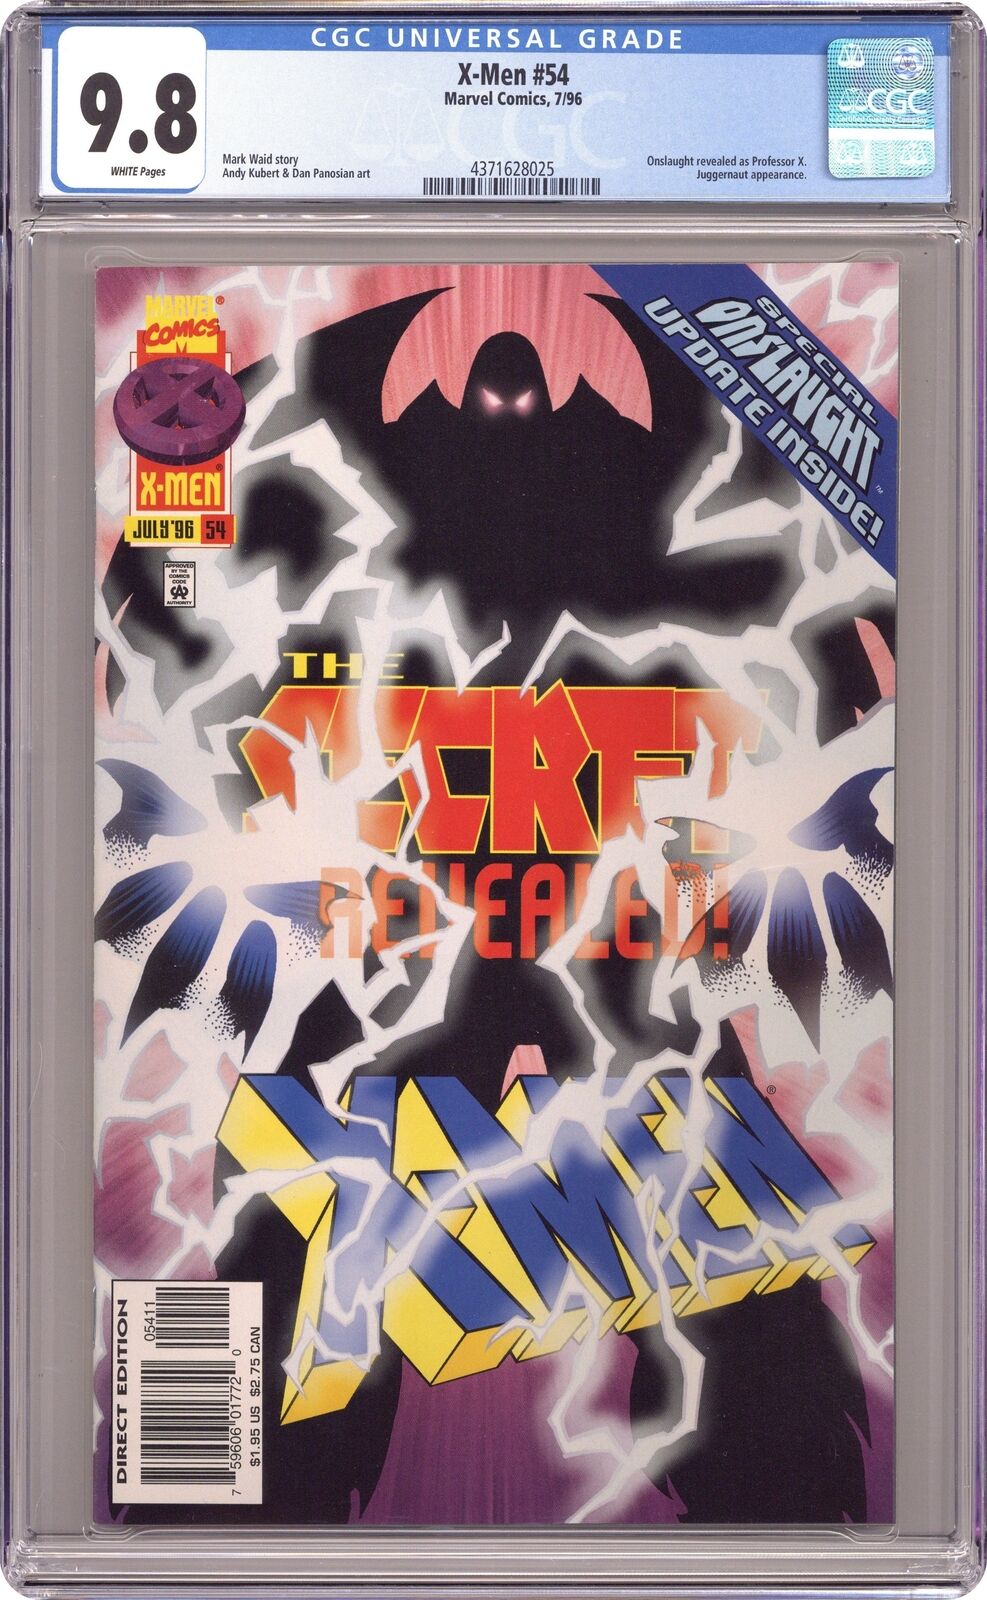 X-Men #54 CGC 9.8 1996 4371628025